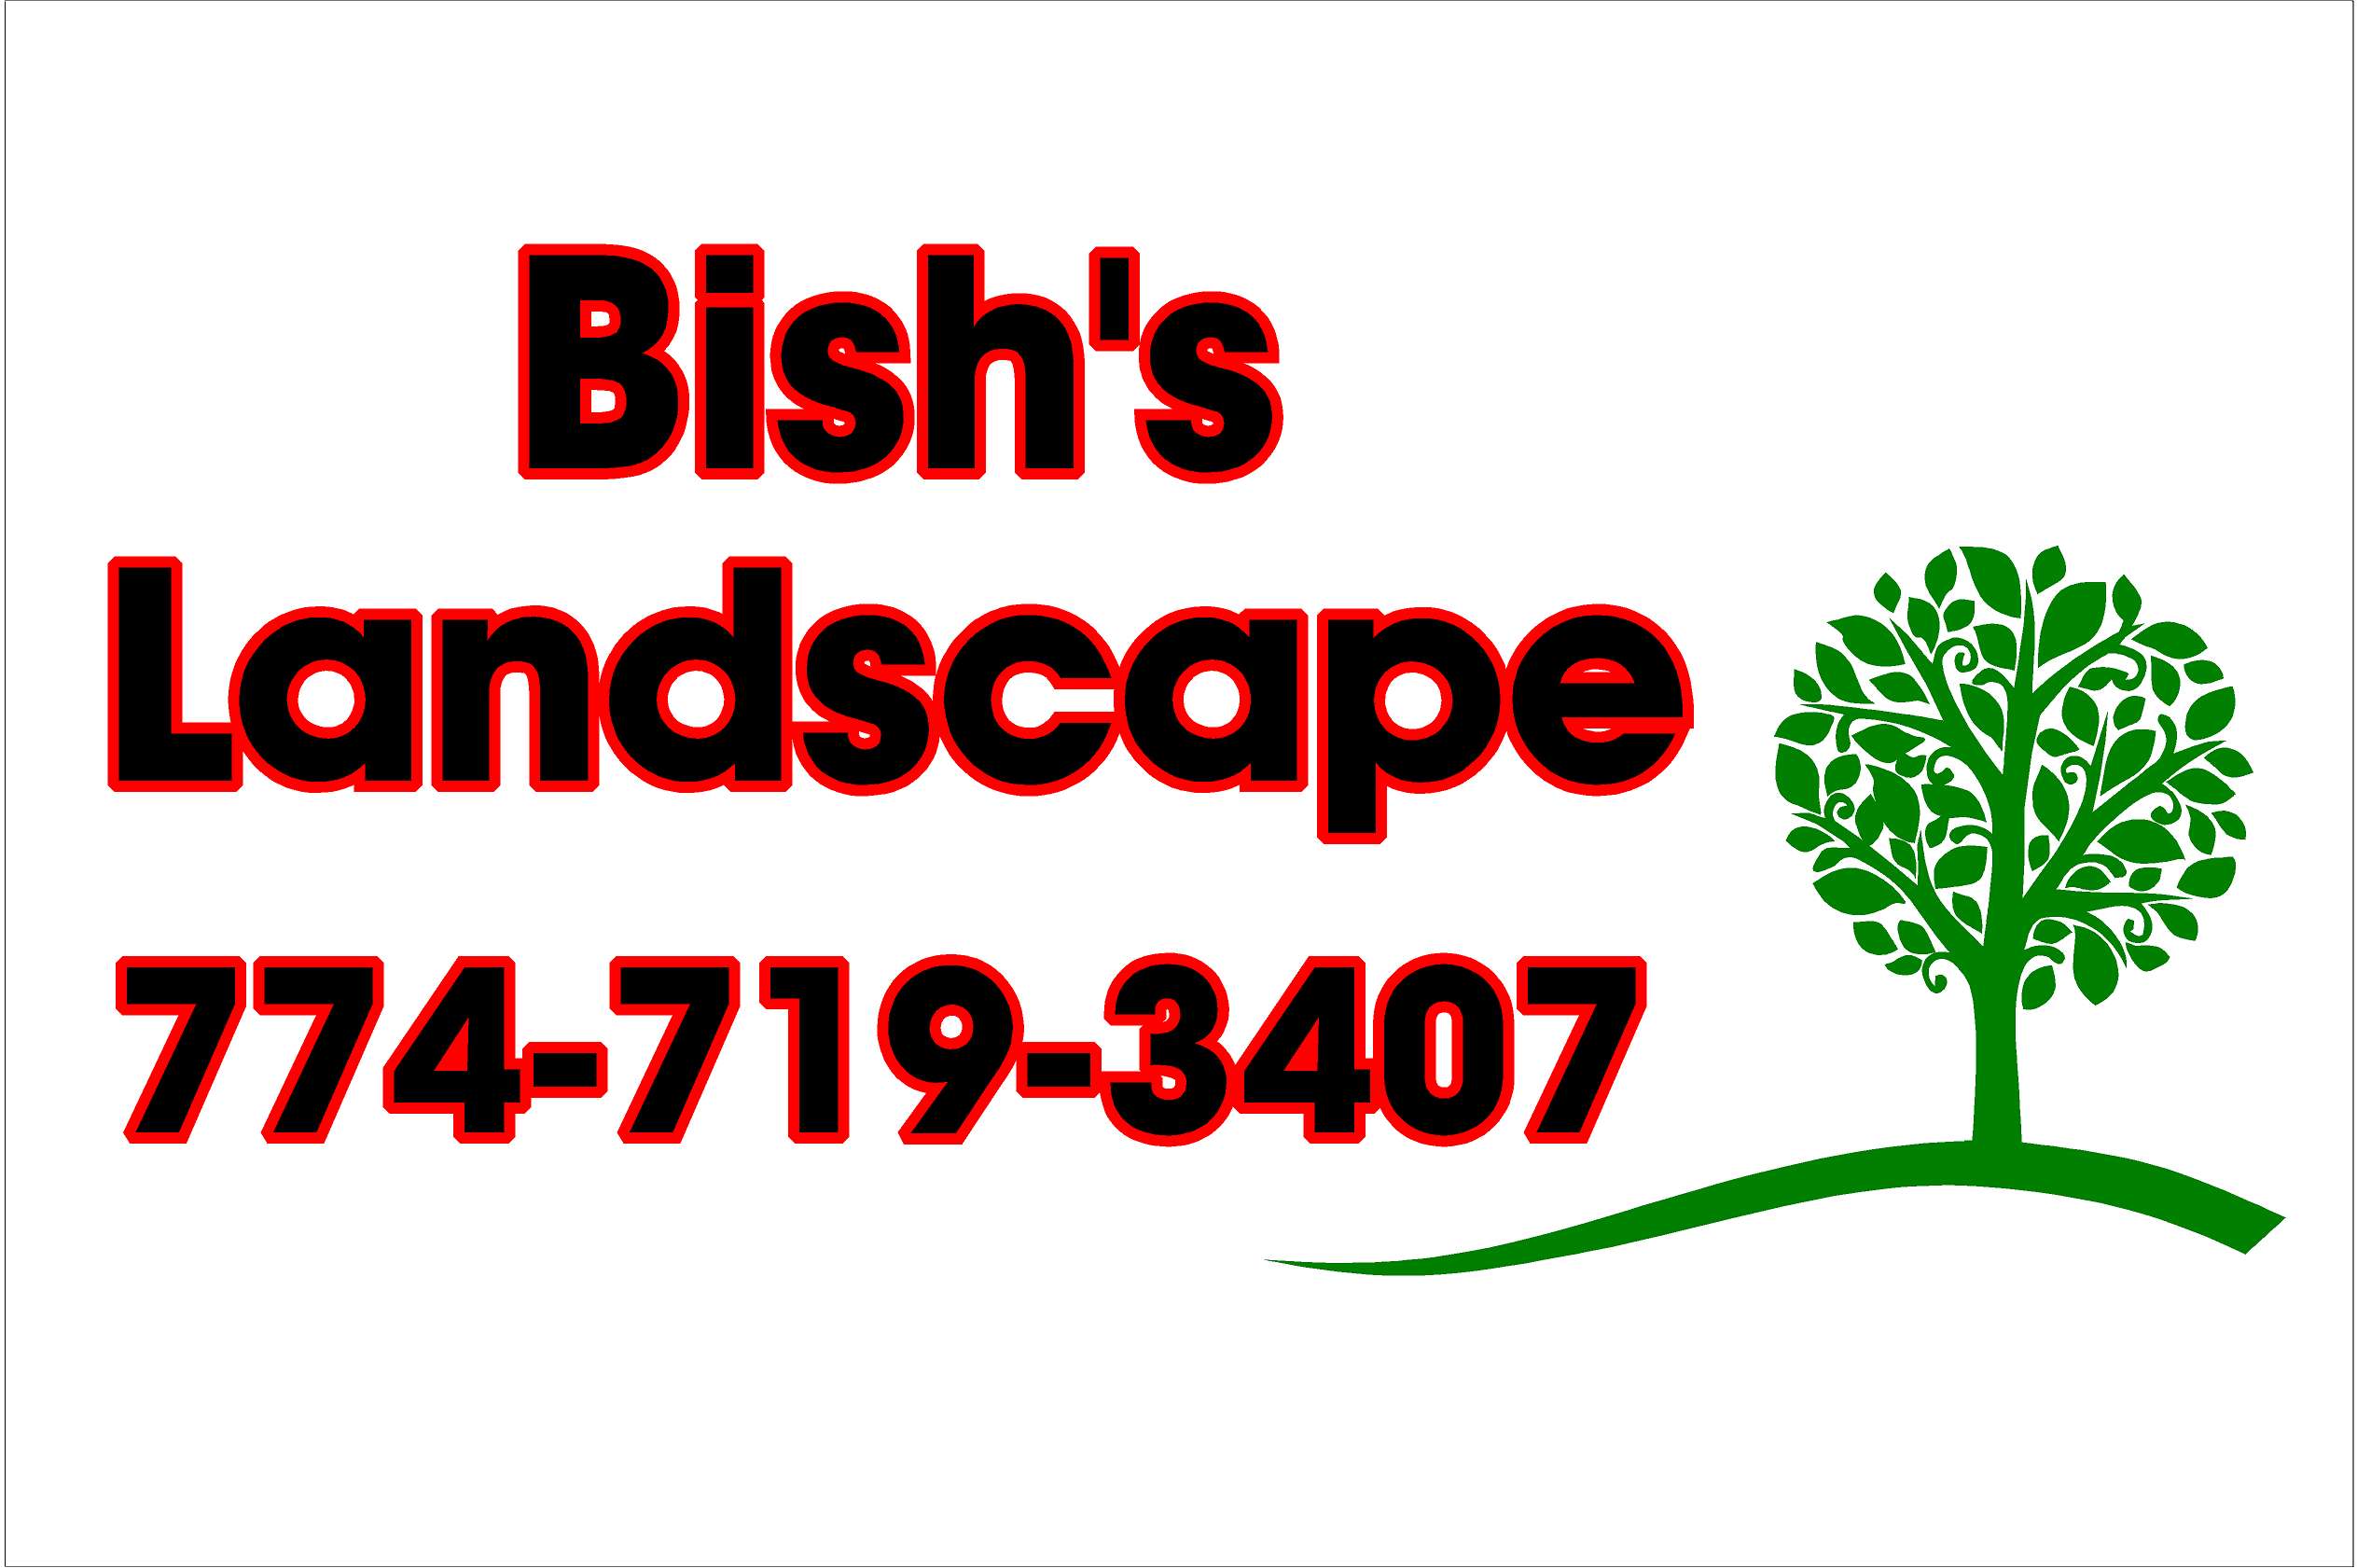 Bish's Landscape Logo